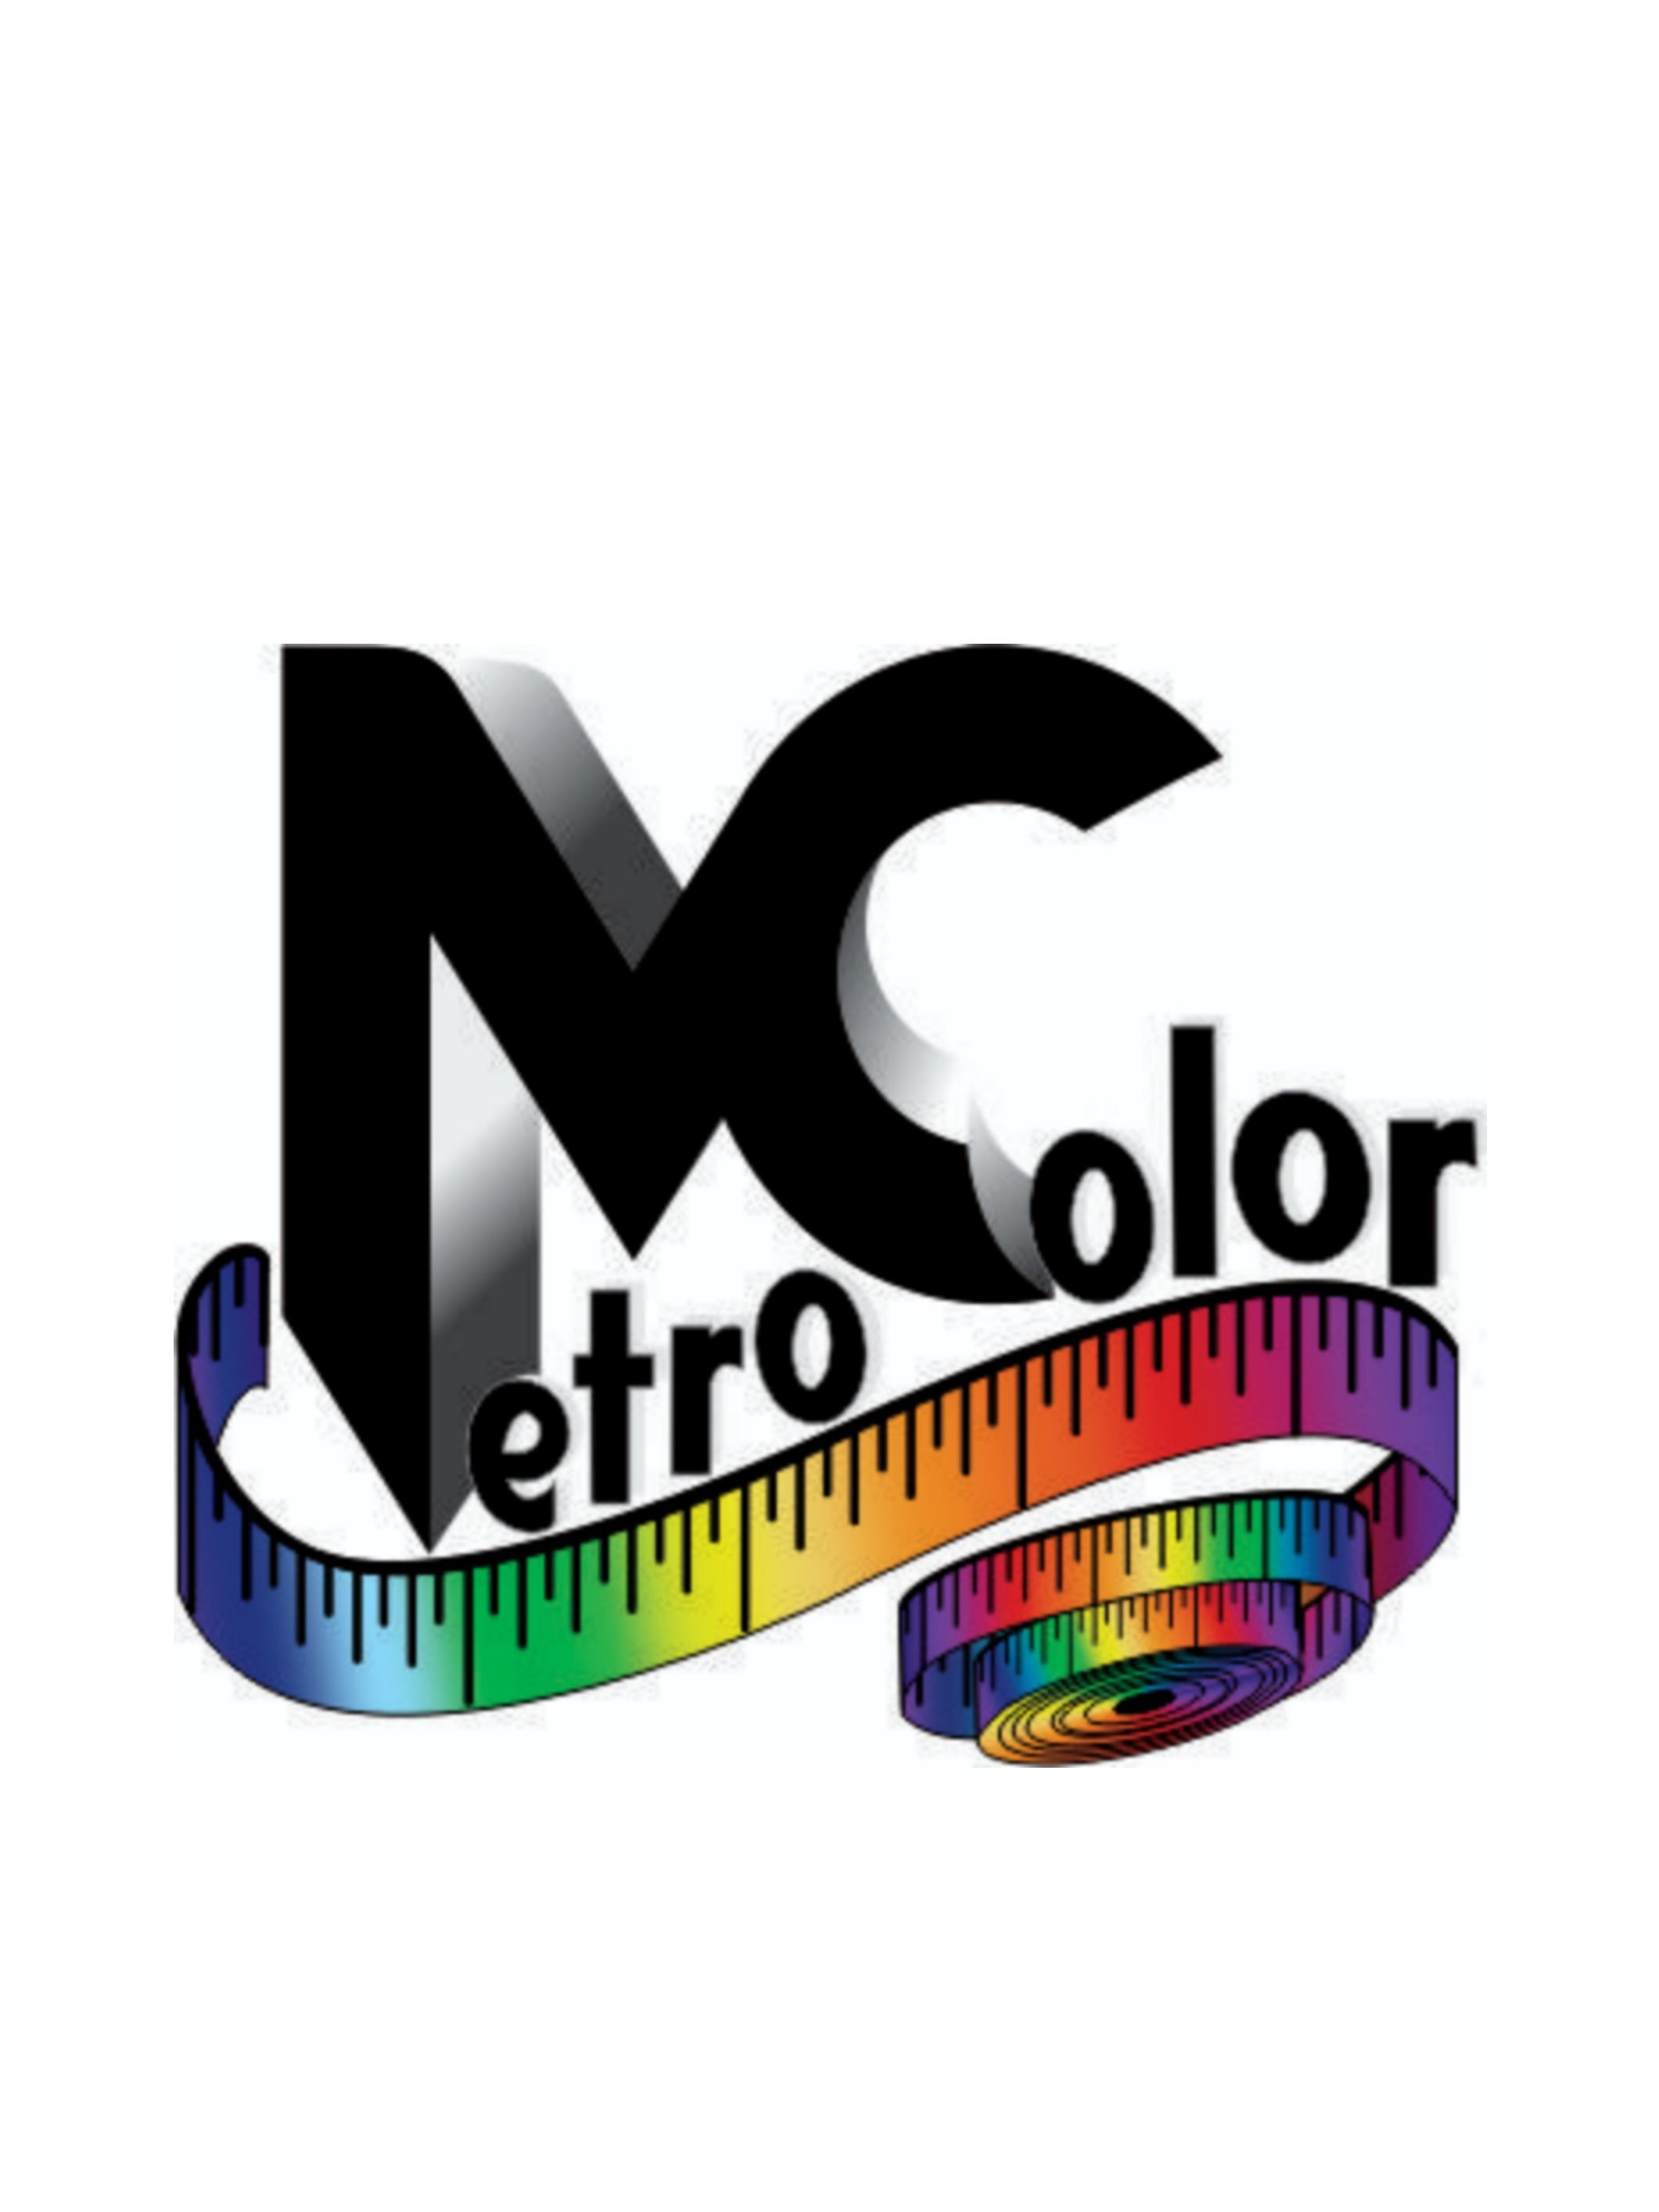 Metrocolor spa